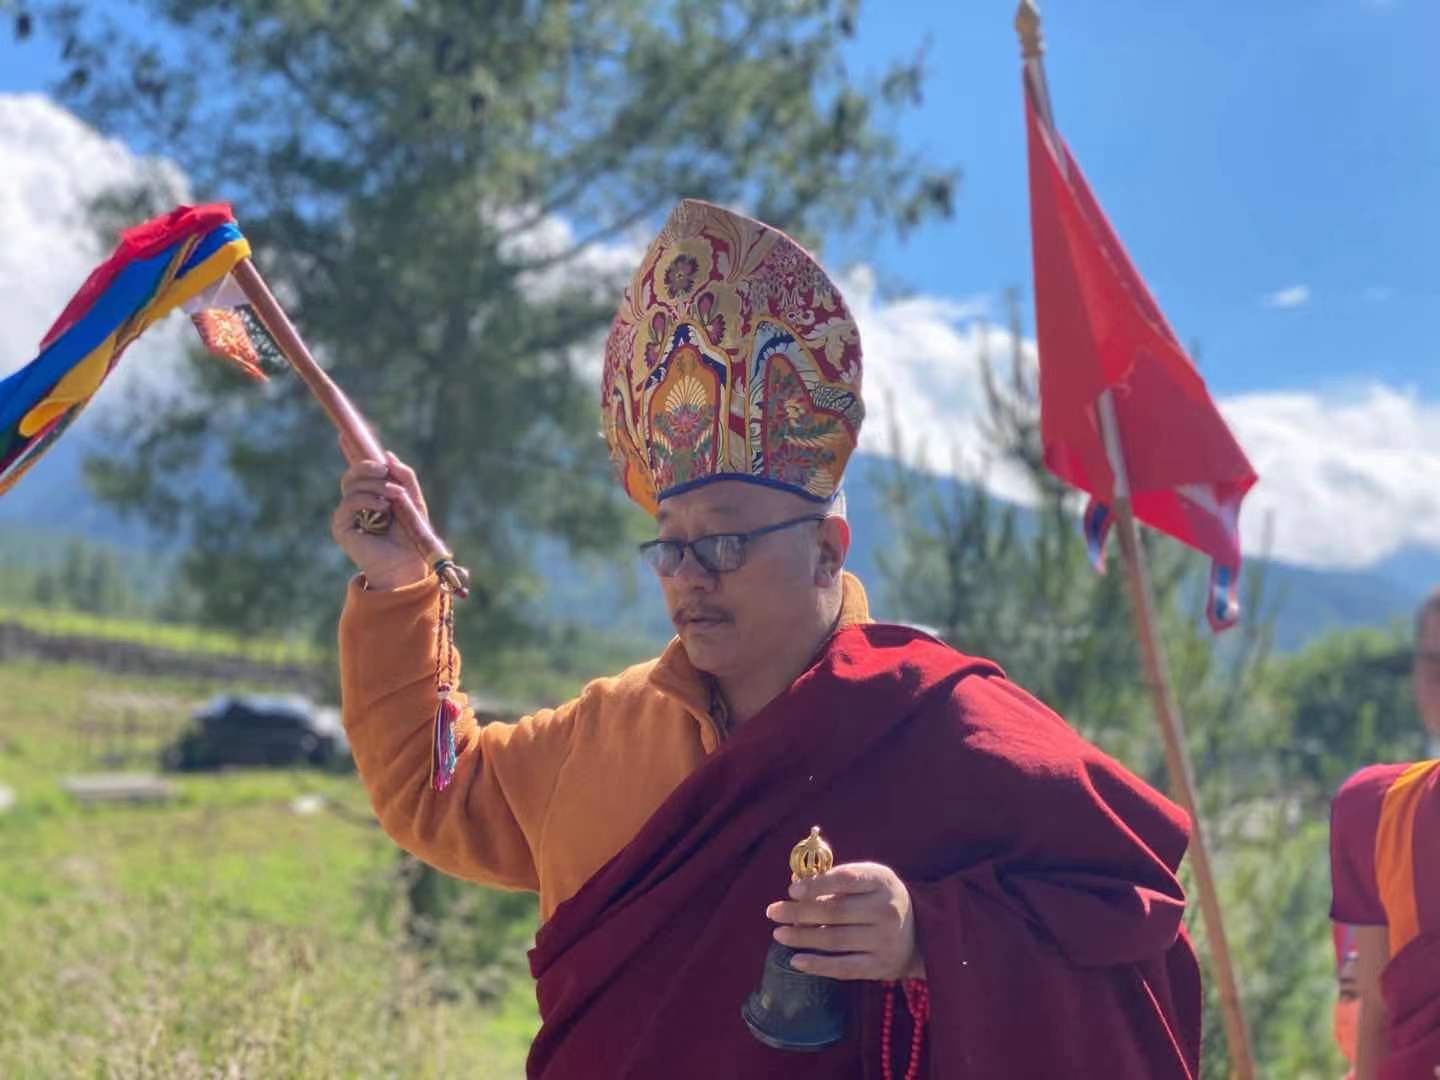 Celebrating Rinpoche’s 60th birthday